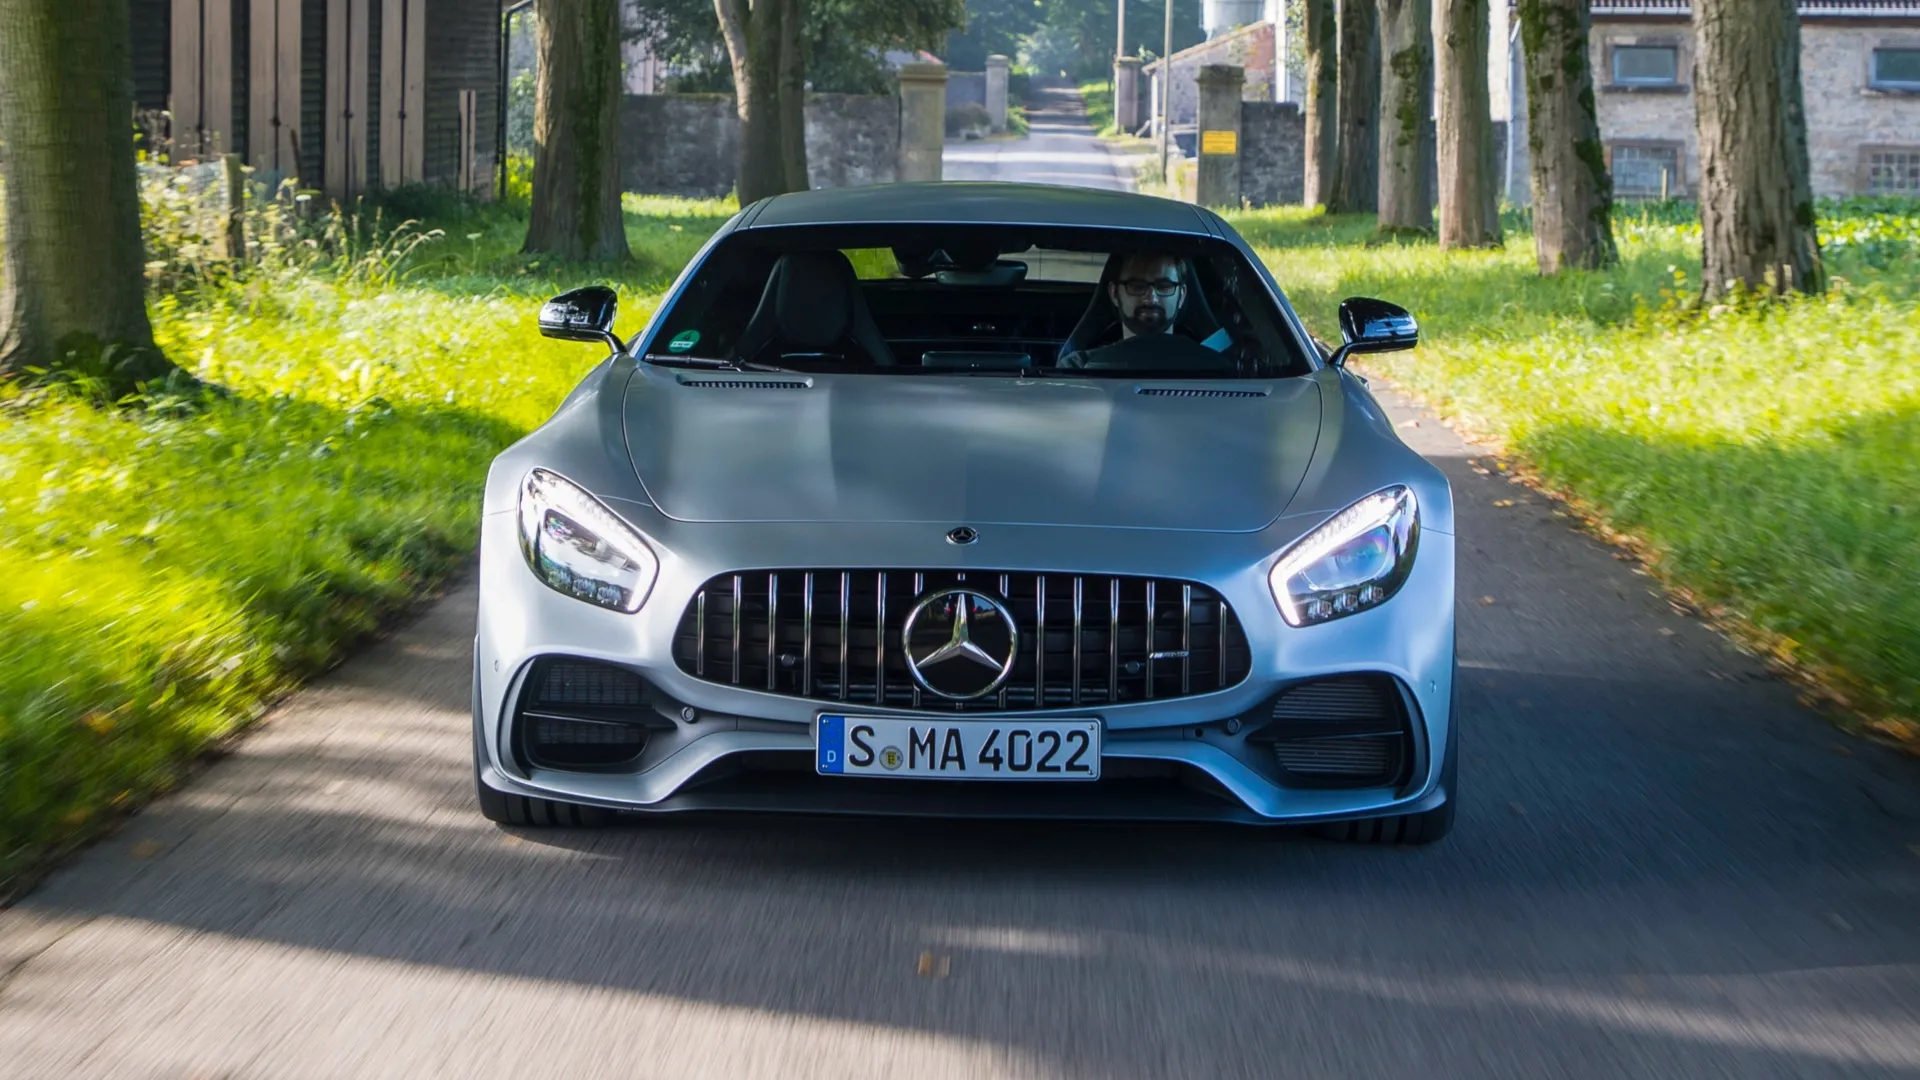 La próxima generación del Mercedes-AMG GT ya rueda